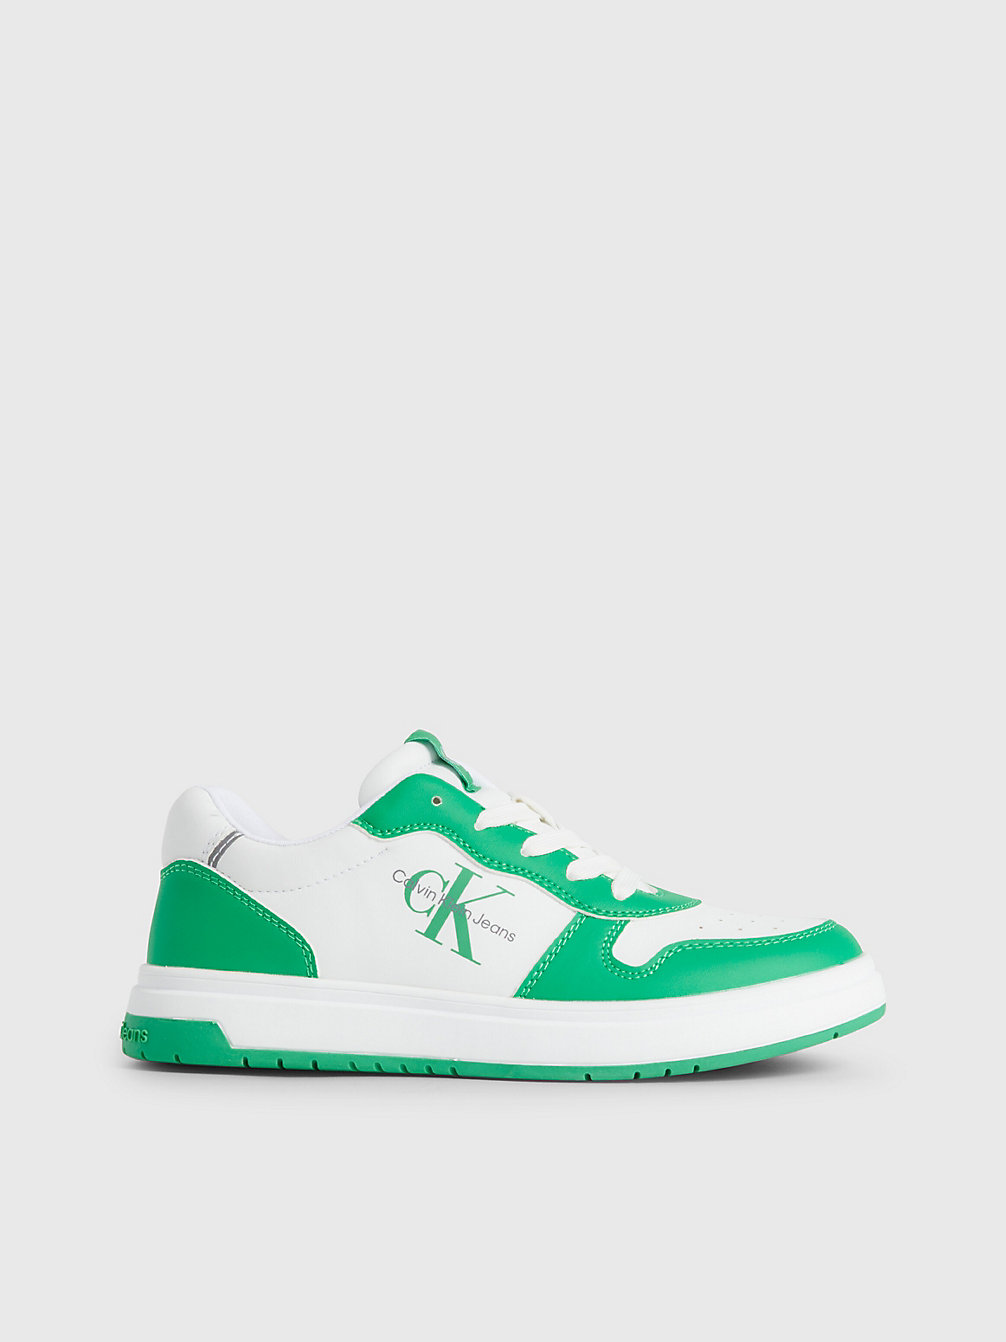 GREEN / WHITE > Recycelte Sneakers Für Kinder > undefined kids unisex - Calvin Klein